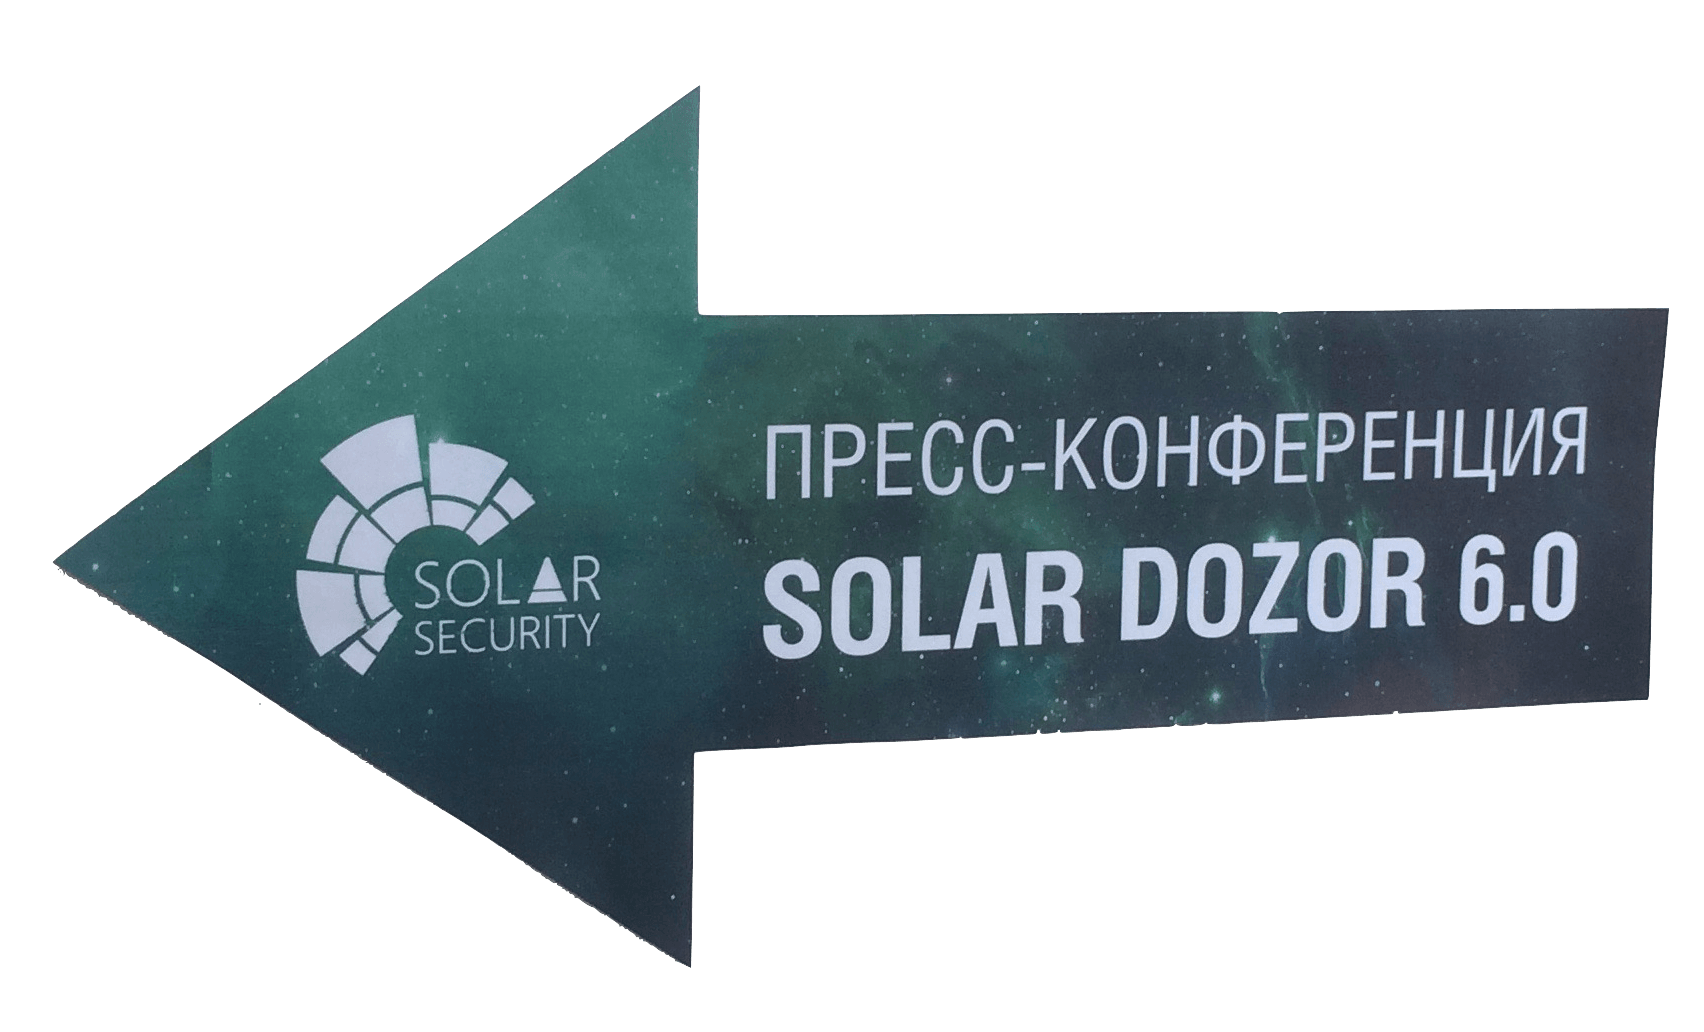 Пресс-коференция Solar Dozor 6.0